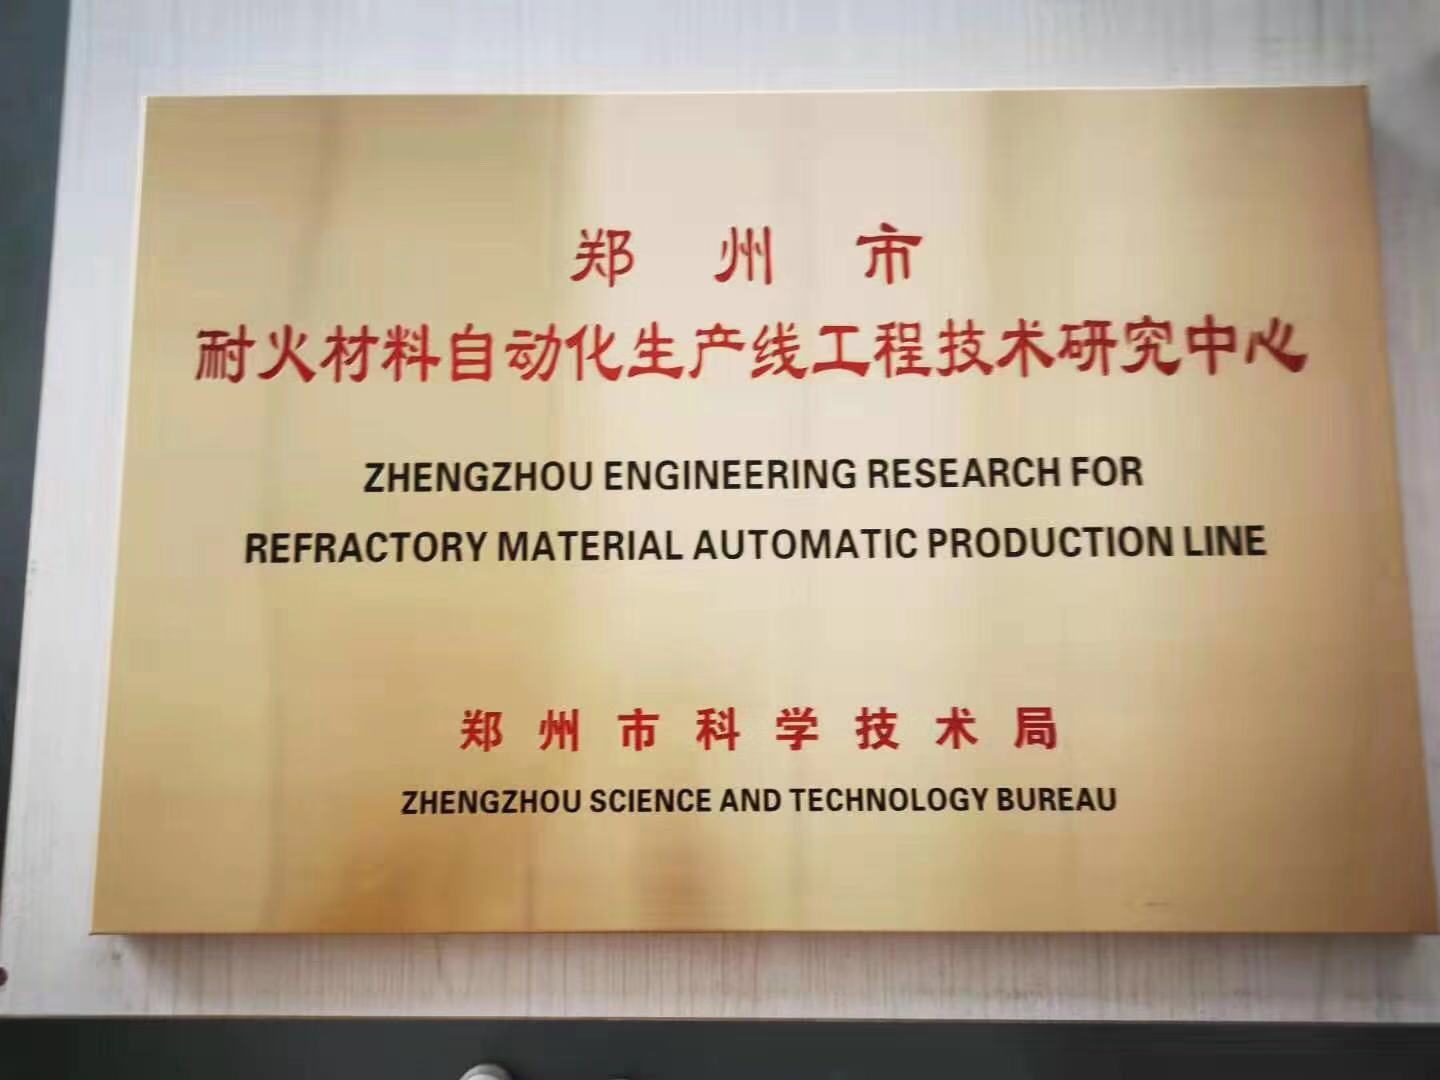 耐火材料生产线工程研究中心(1)